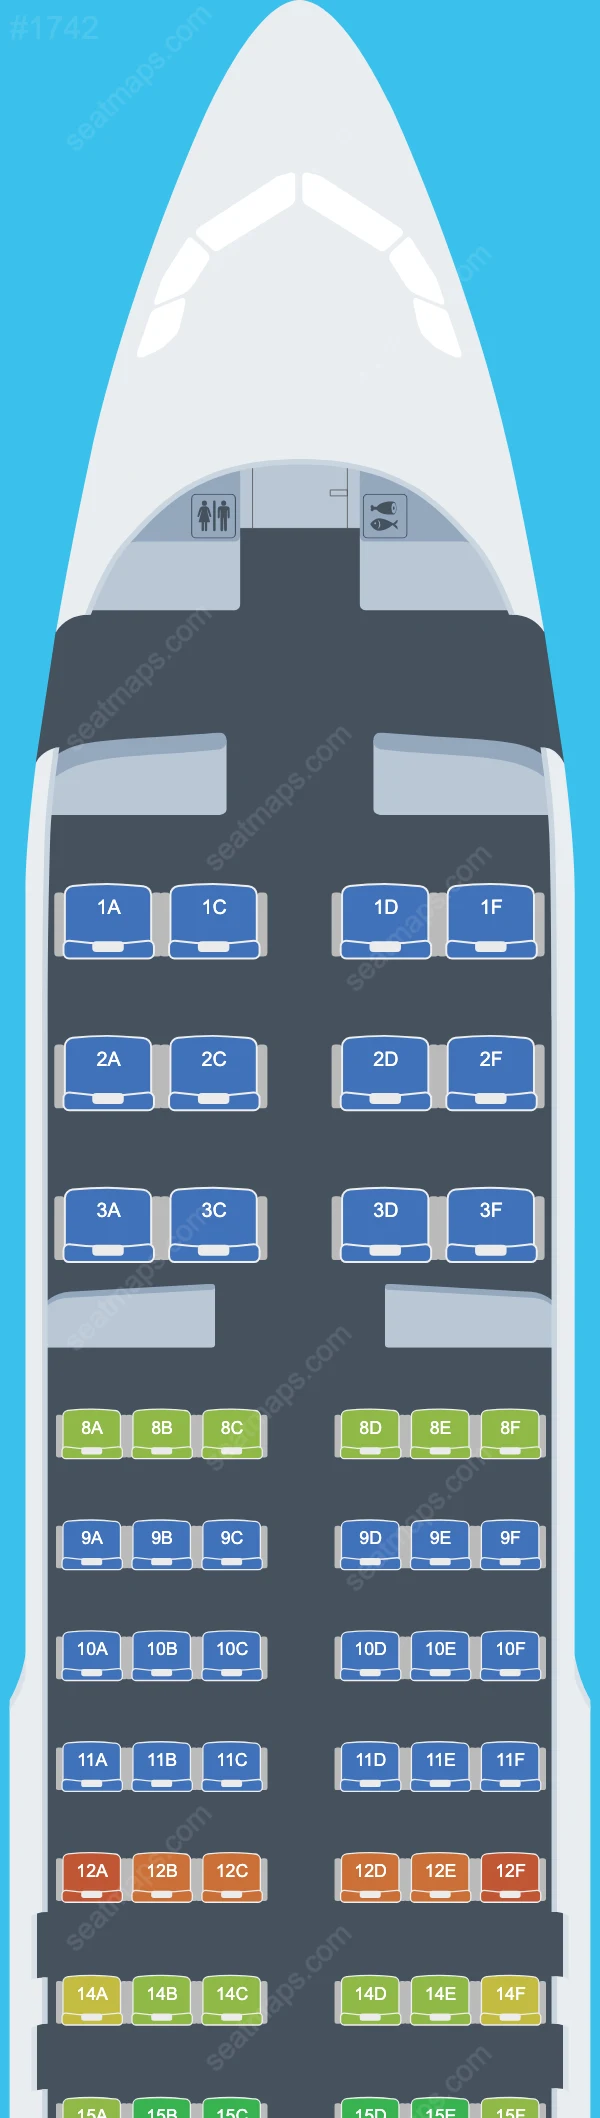 Схема мест Airbus A320